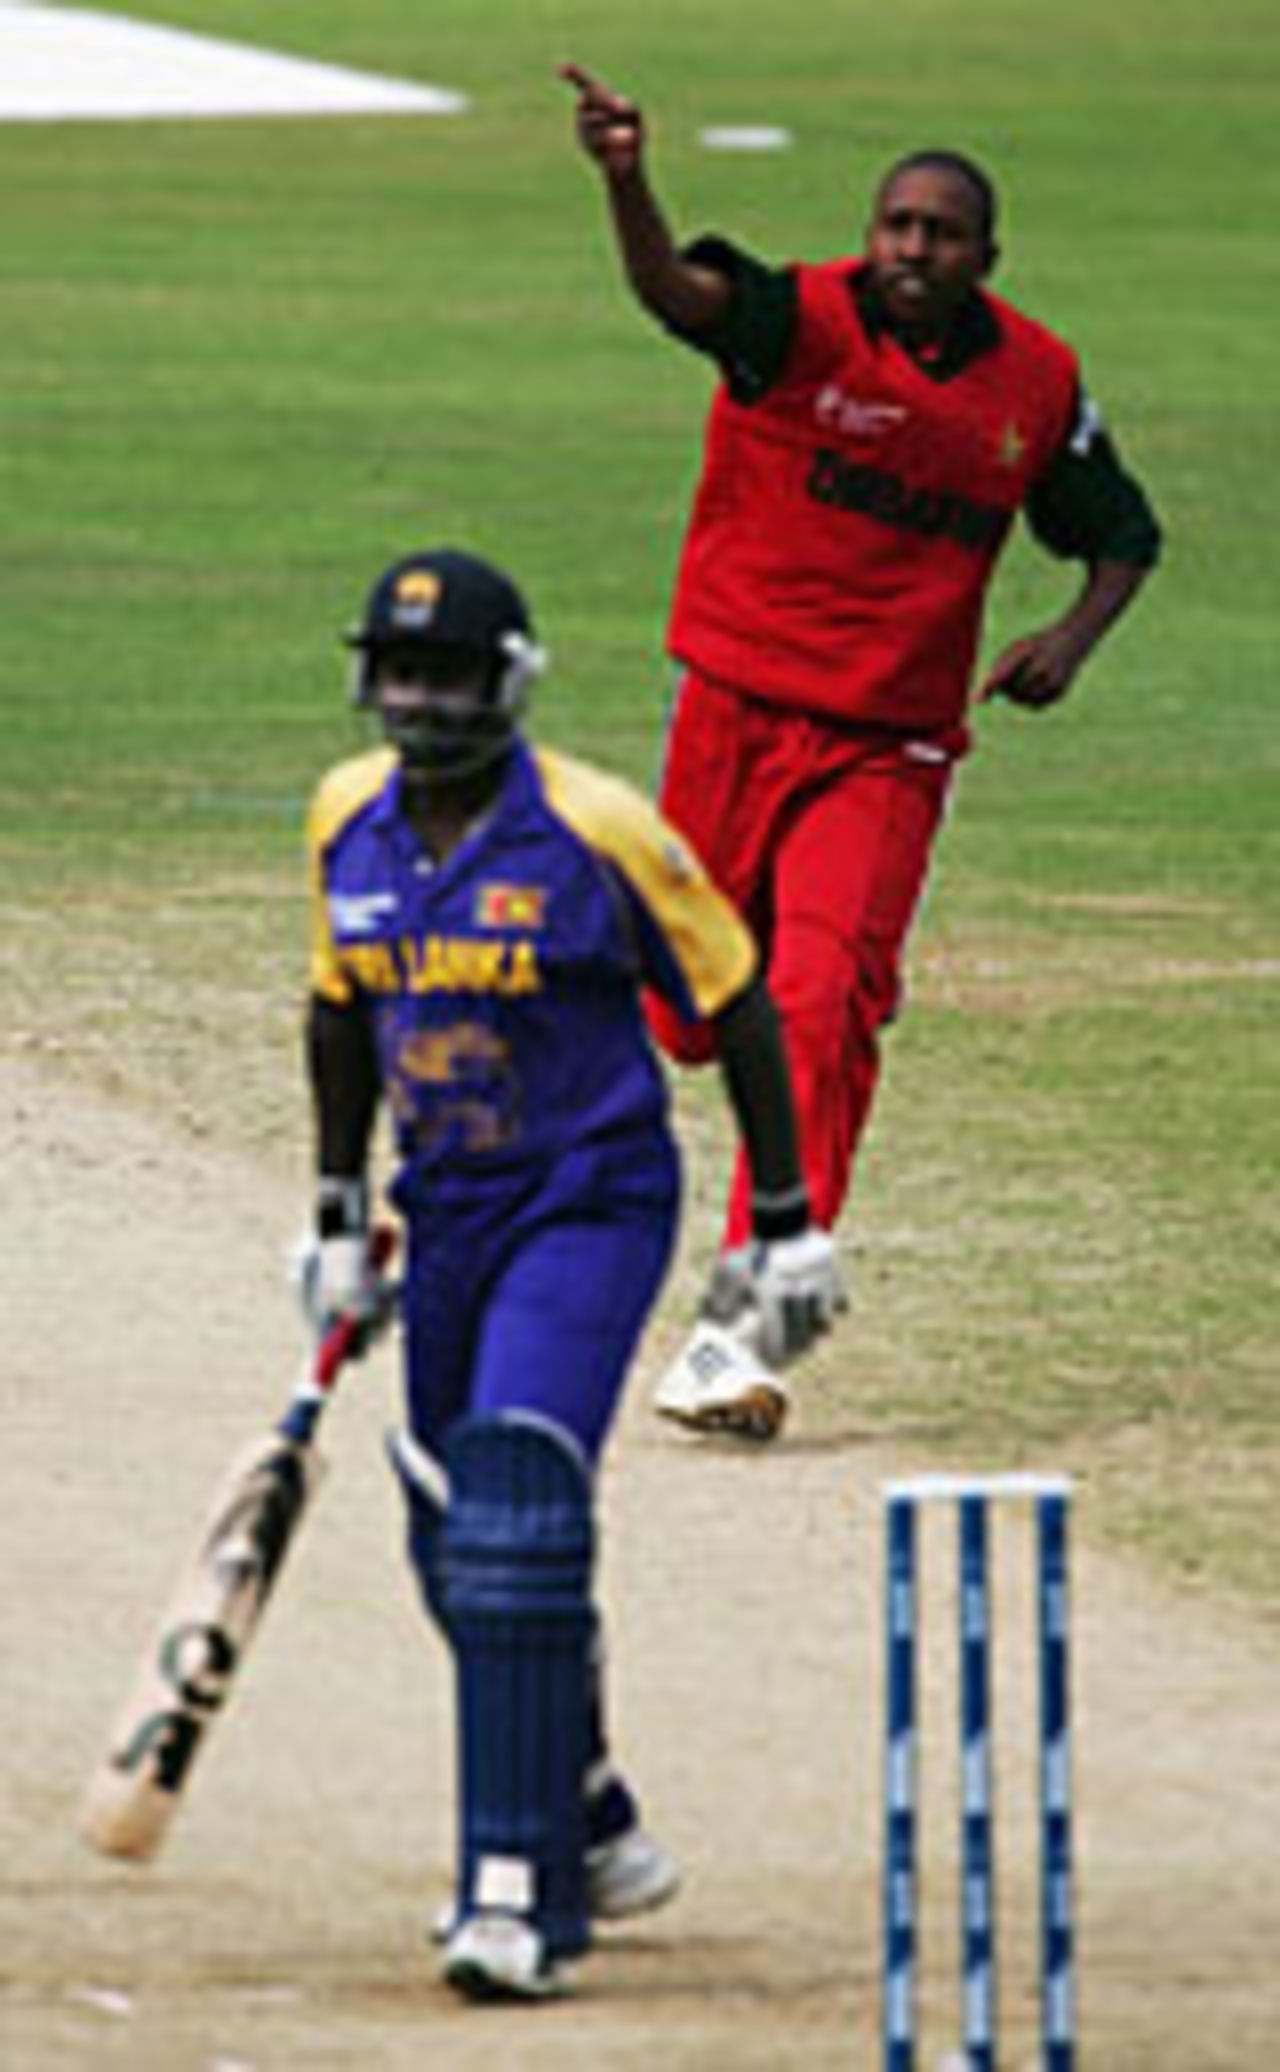 Tinashe Panyangara celebrates the wicket of Saman Jayantha, Sri Lanka v Zimbabwe, The Oval, September 14, 2004